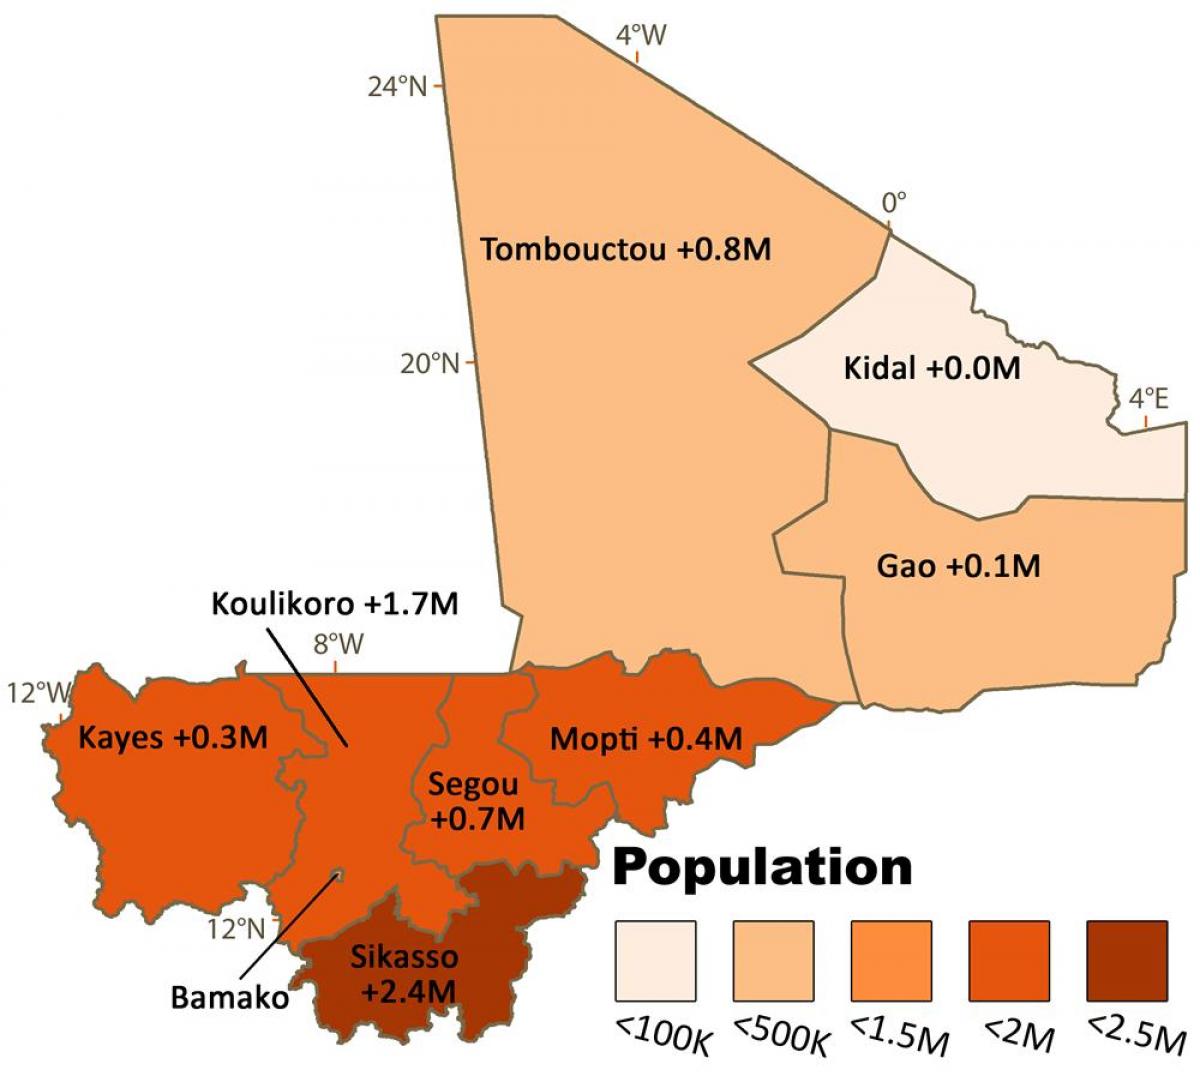 Karte von Mali-Bevölkerung